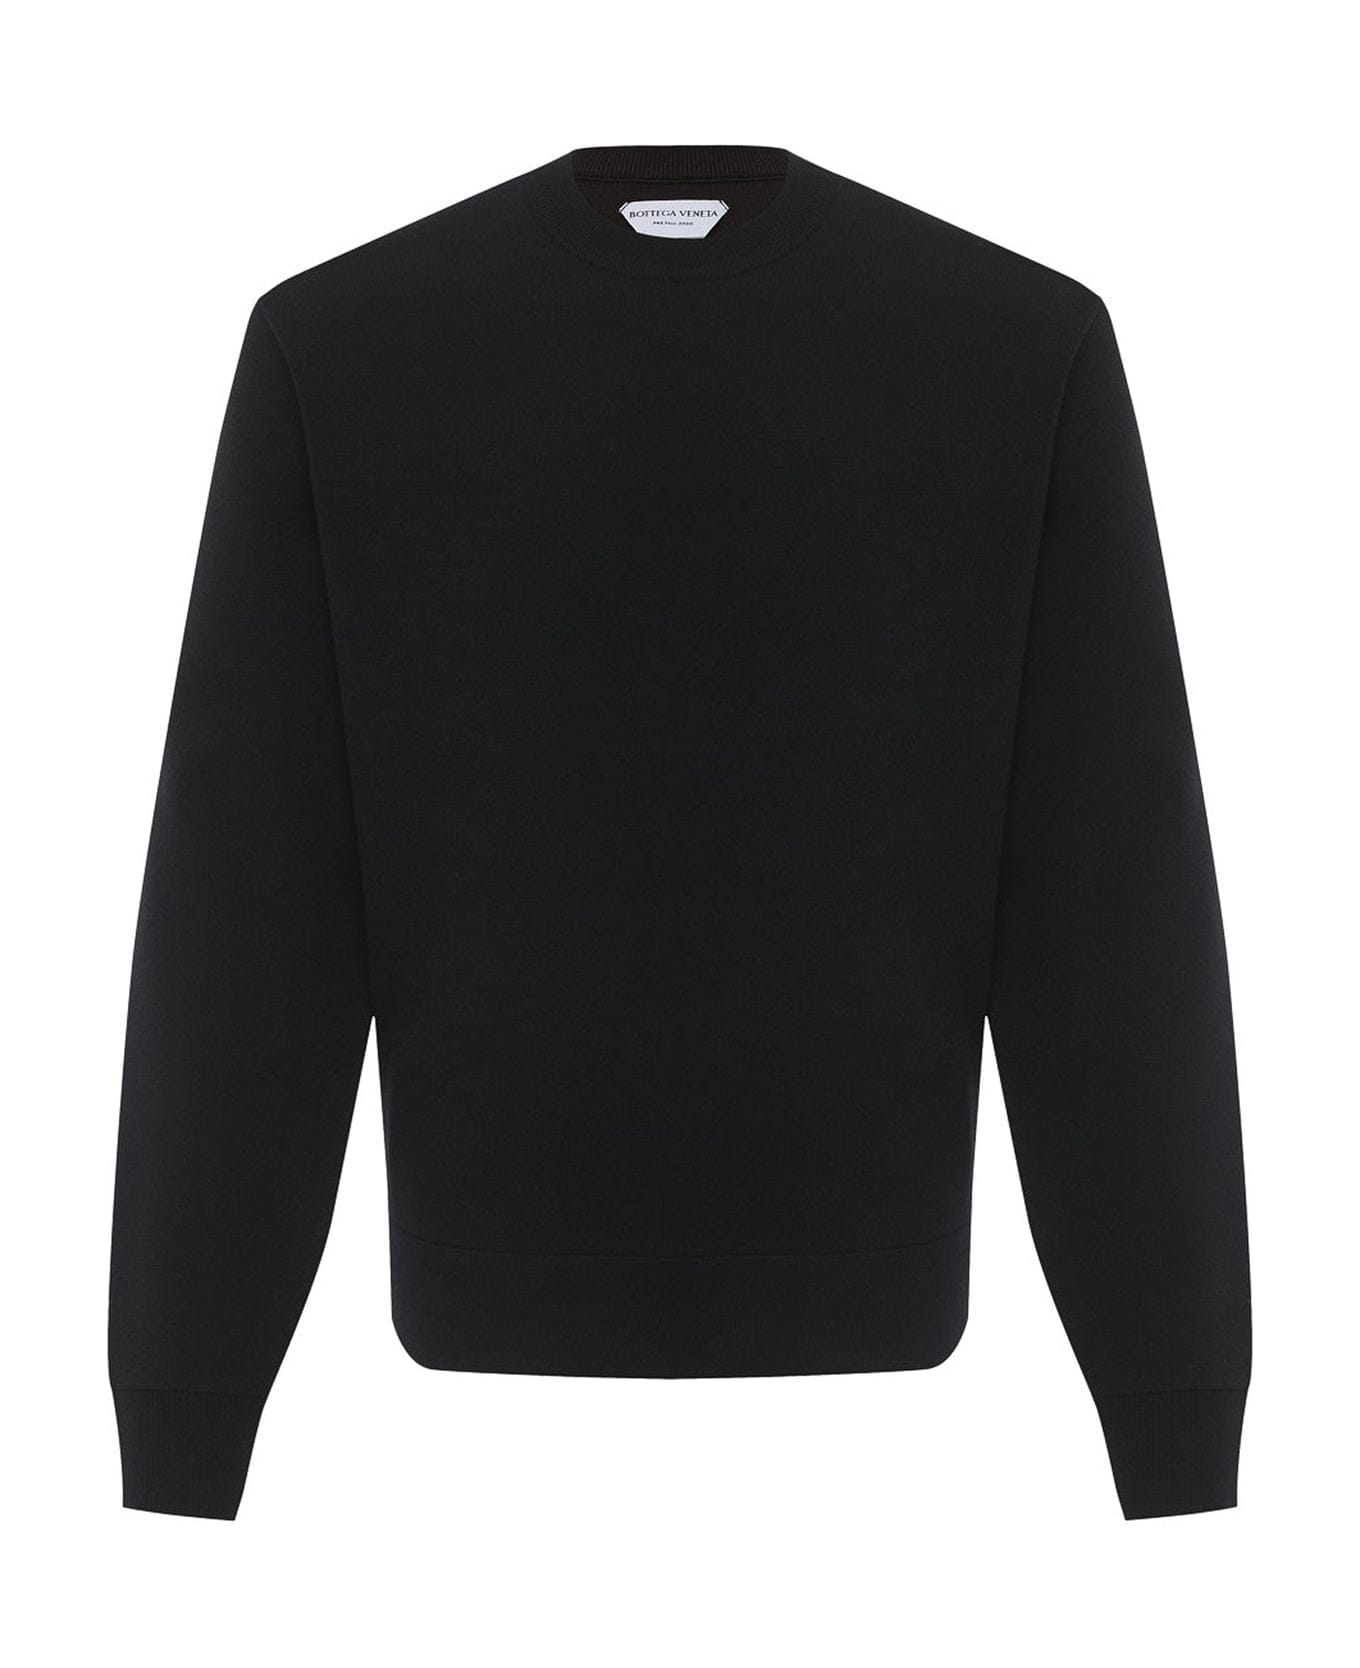 Bottega Veneta Sweater - Black